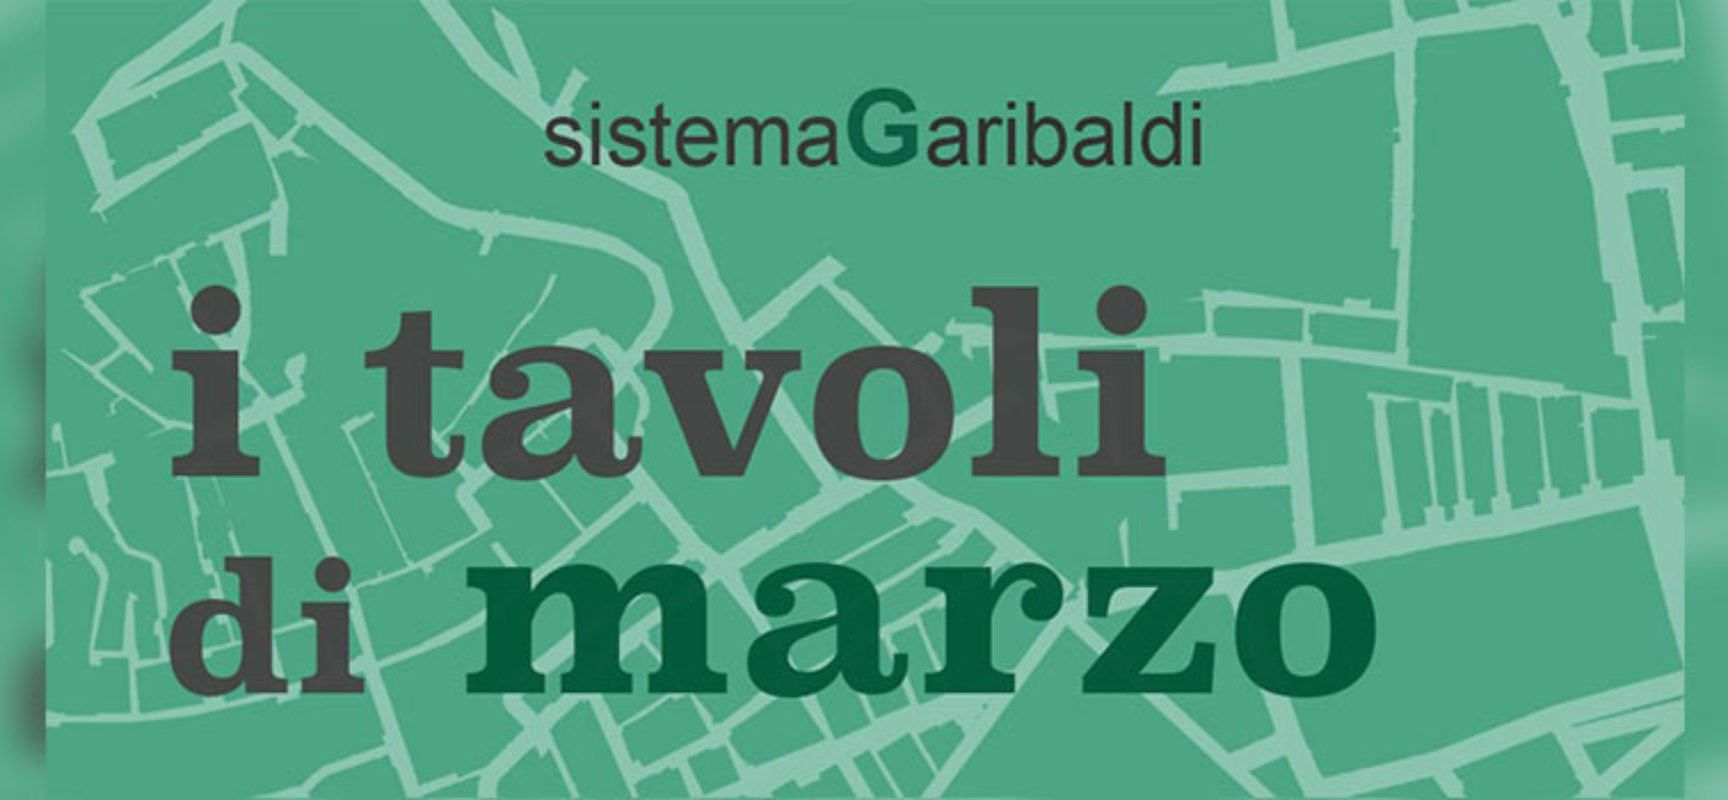 Sistema Garibaldi: sguardo femminile per indagare il futuro della Città / PROGRAMMA